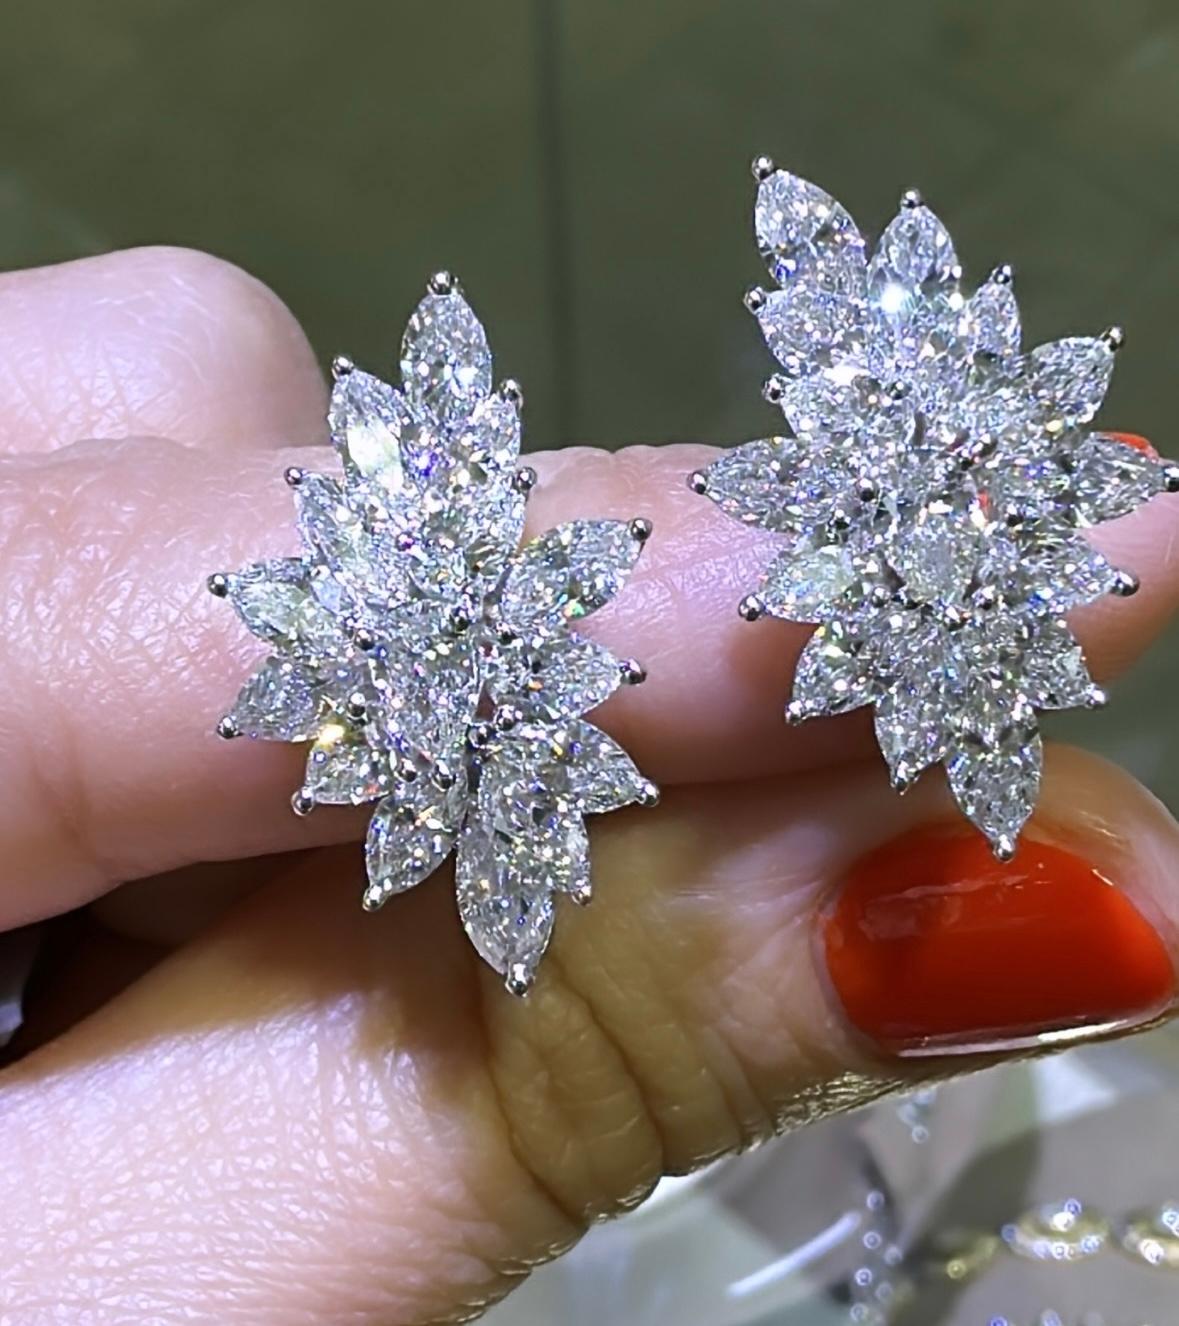 Diese exquisiten, spektakulären Diamantohrringe in Marquise- und Birnenform bestechen durch ein Gesamtgewicht von 6,23ct Diamanten. Diese einmaligen Ohrringe sind eine luxuriöse Ergänzung für jede Schmucksammlung und verleihen jedem Ensemble